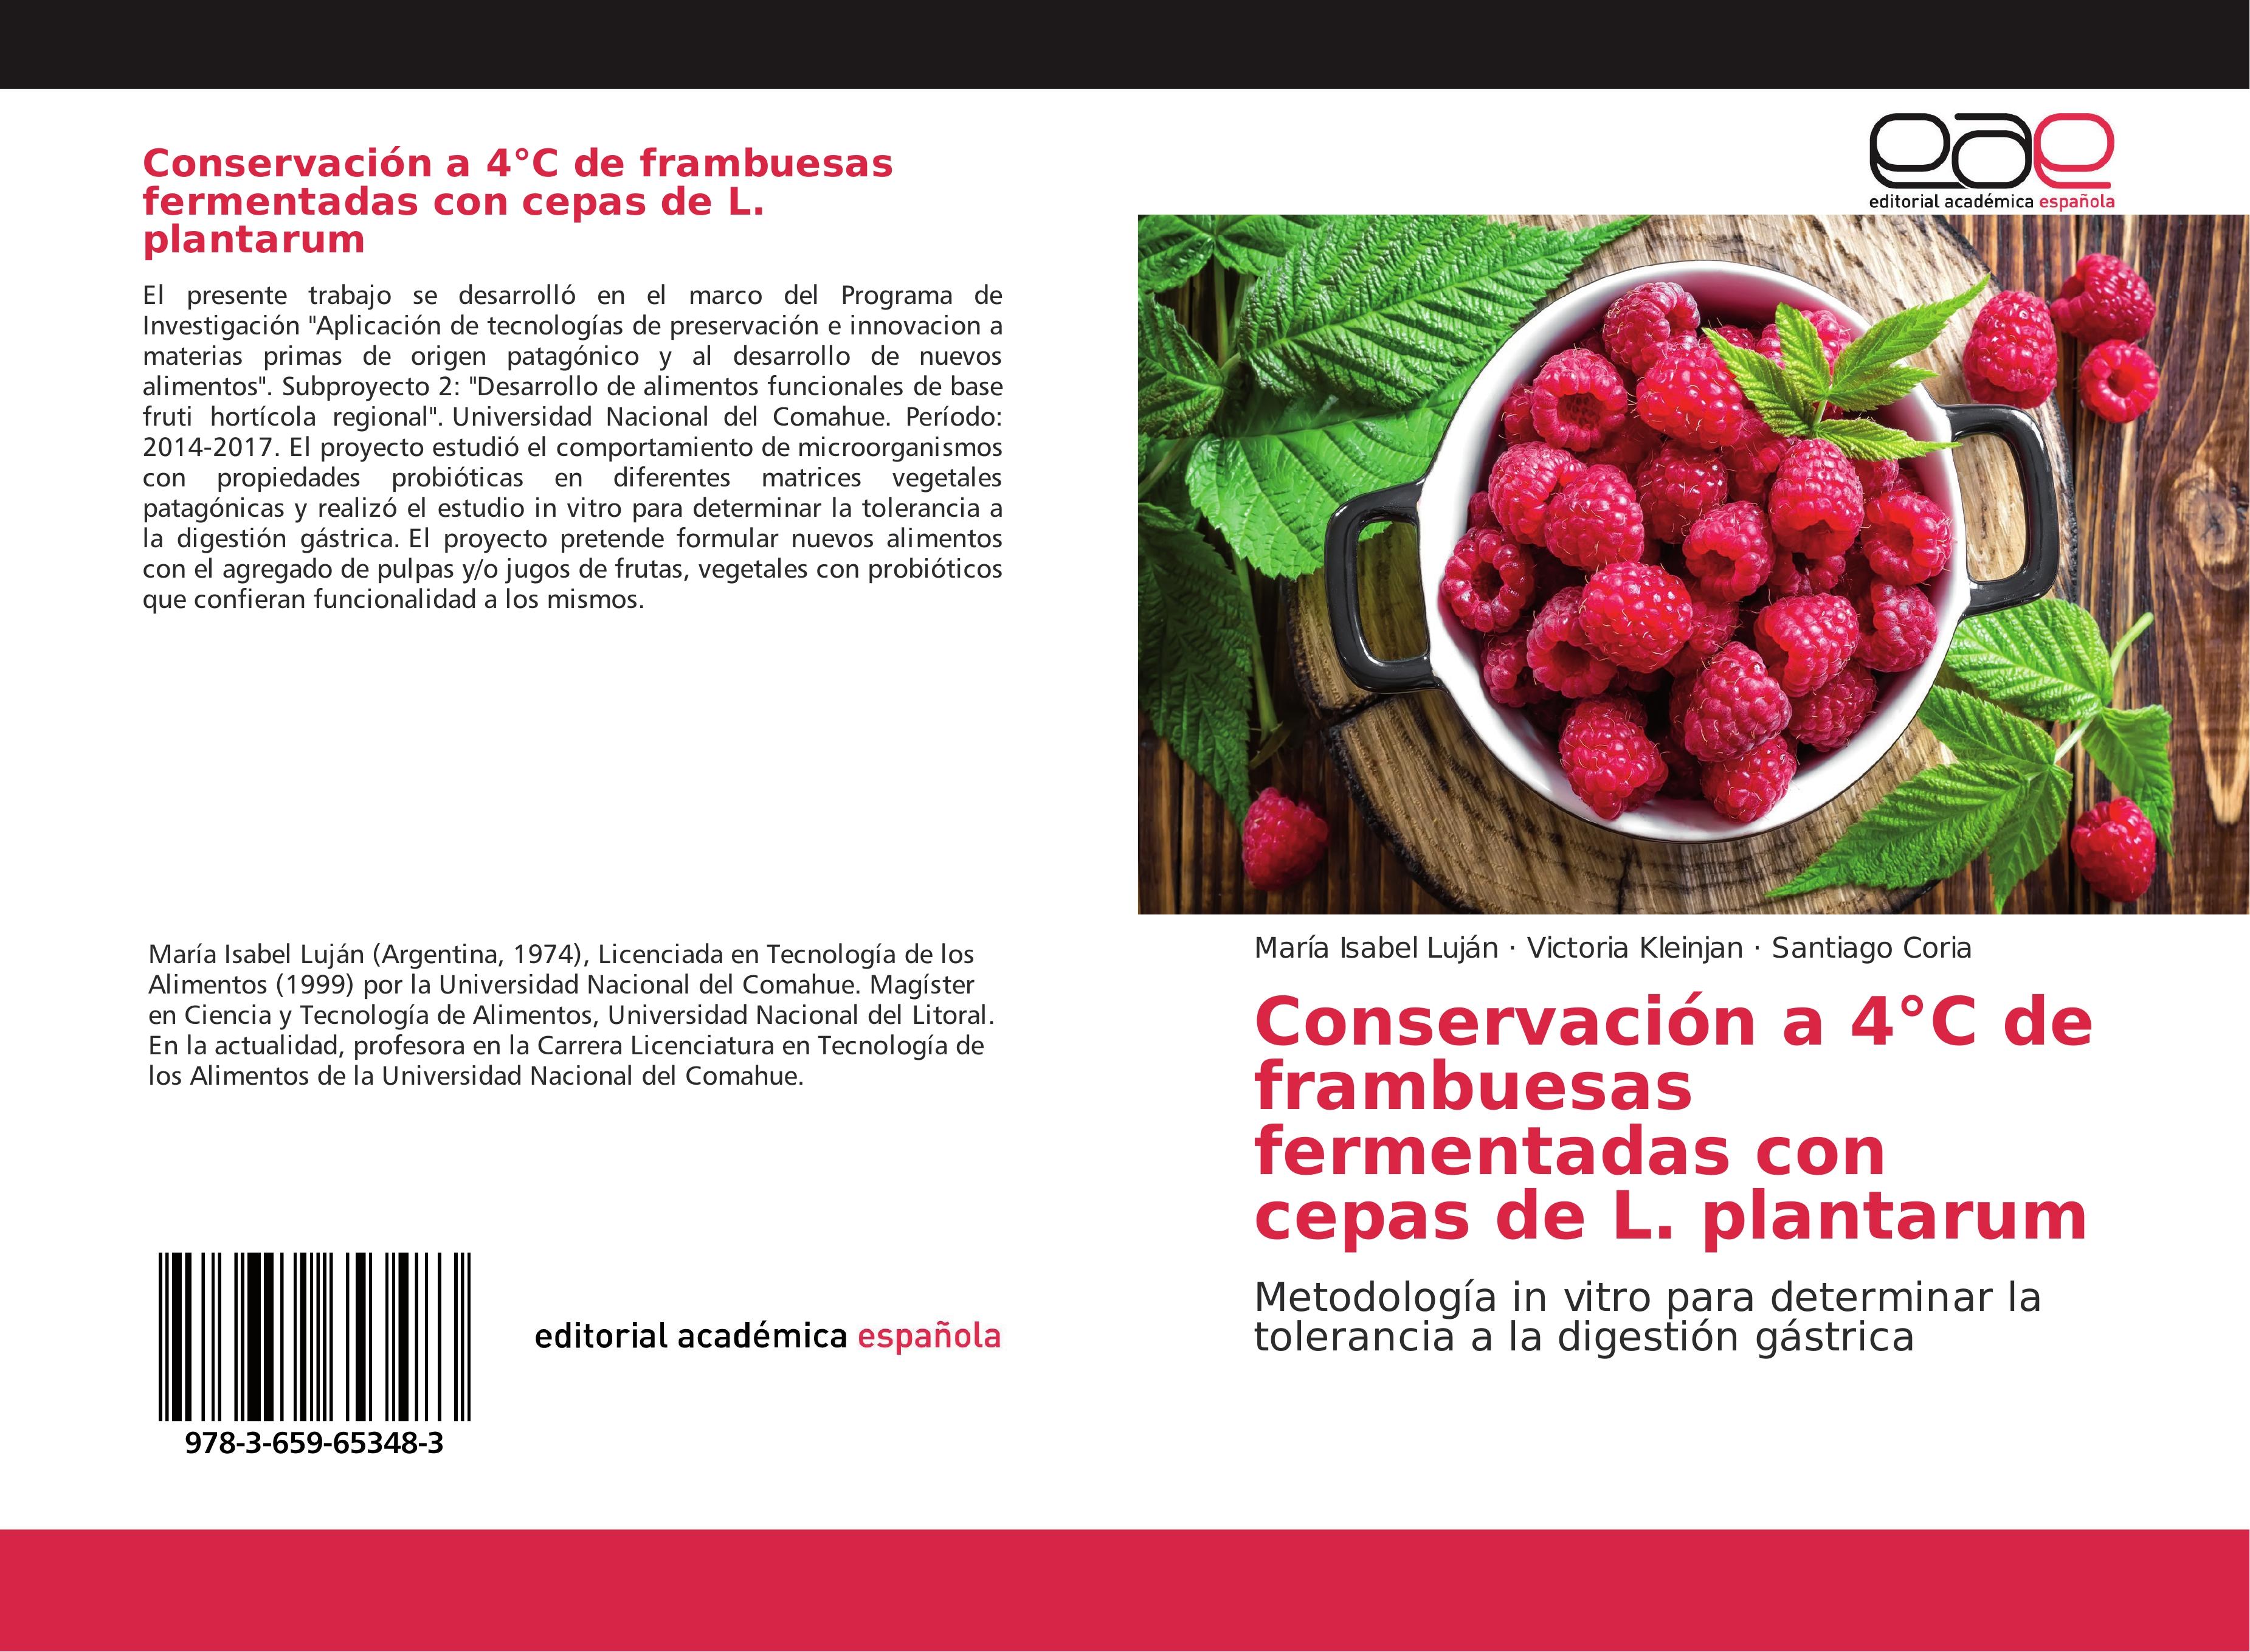 Conservación a 4C de frambuesas fermentadas con cepas de L. plantarum - María Isabel Luján Victoria Kleinjan Santiago Coria